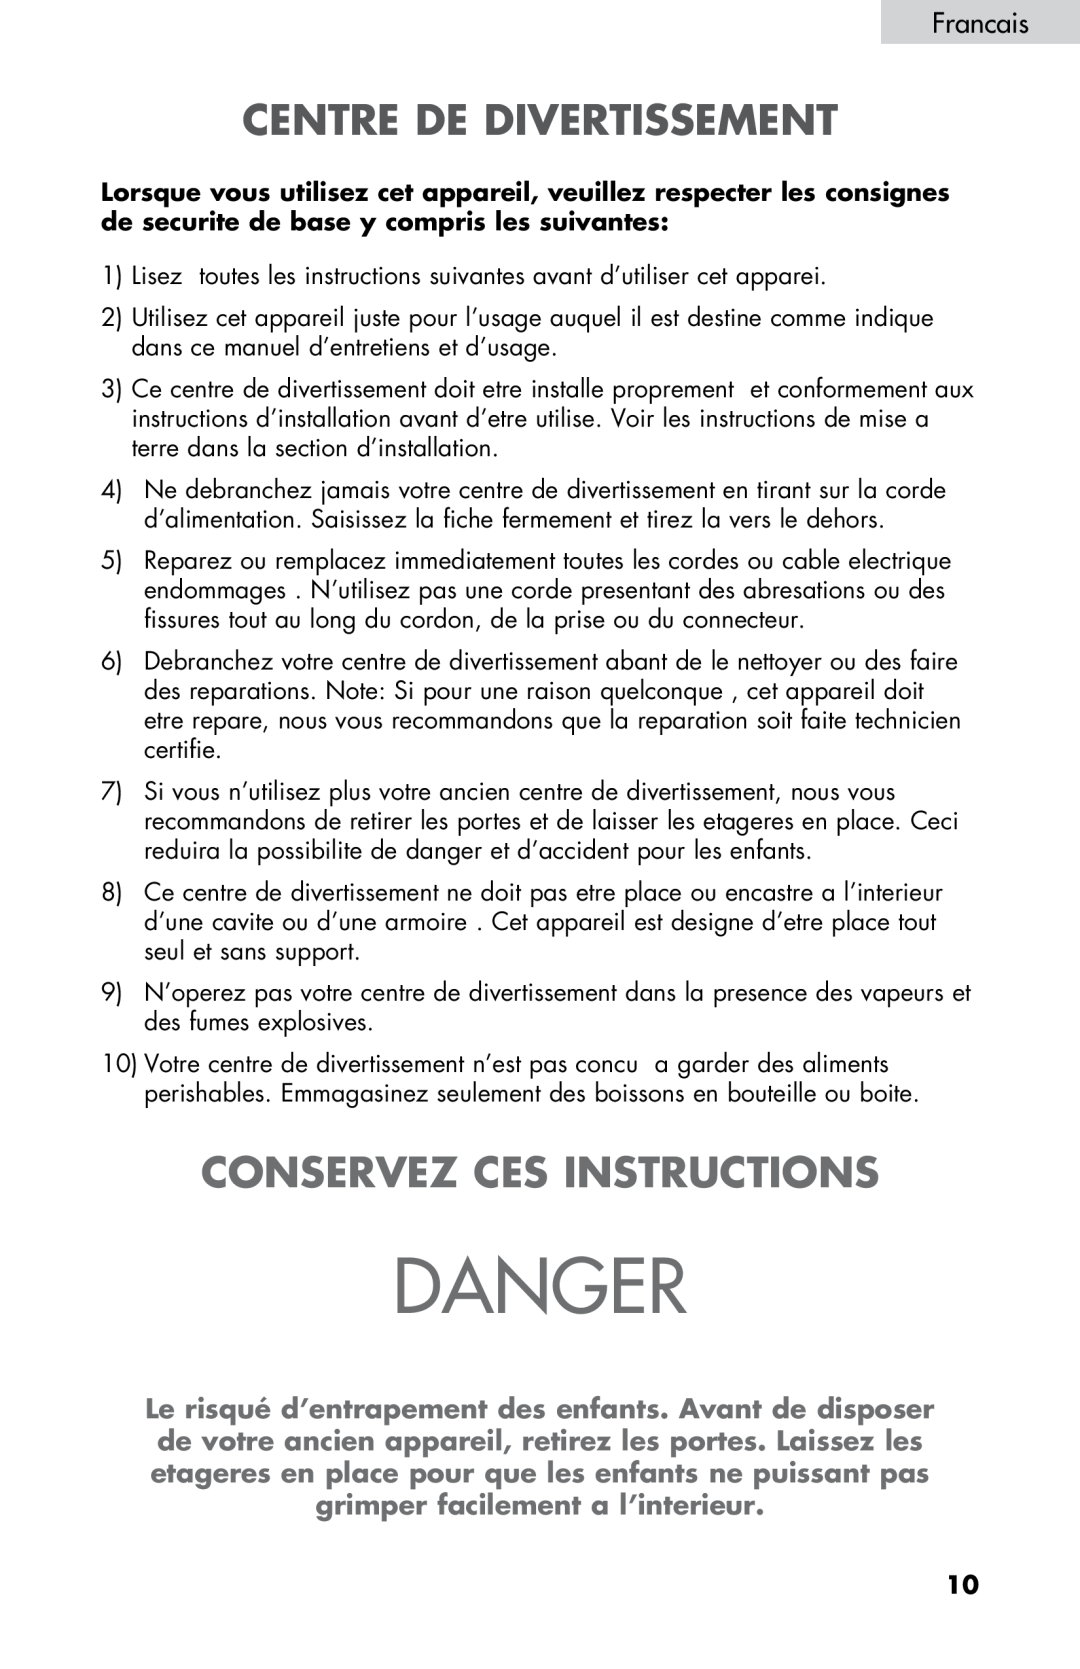 Haier ZHBCN05FVS user manual Centre De Divertissement, Conservez Ces Instructions, Francais, Danger 